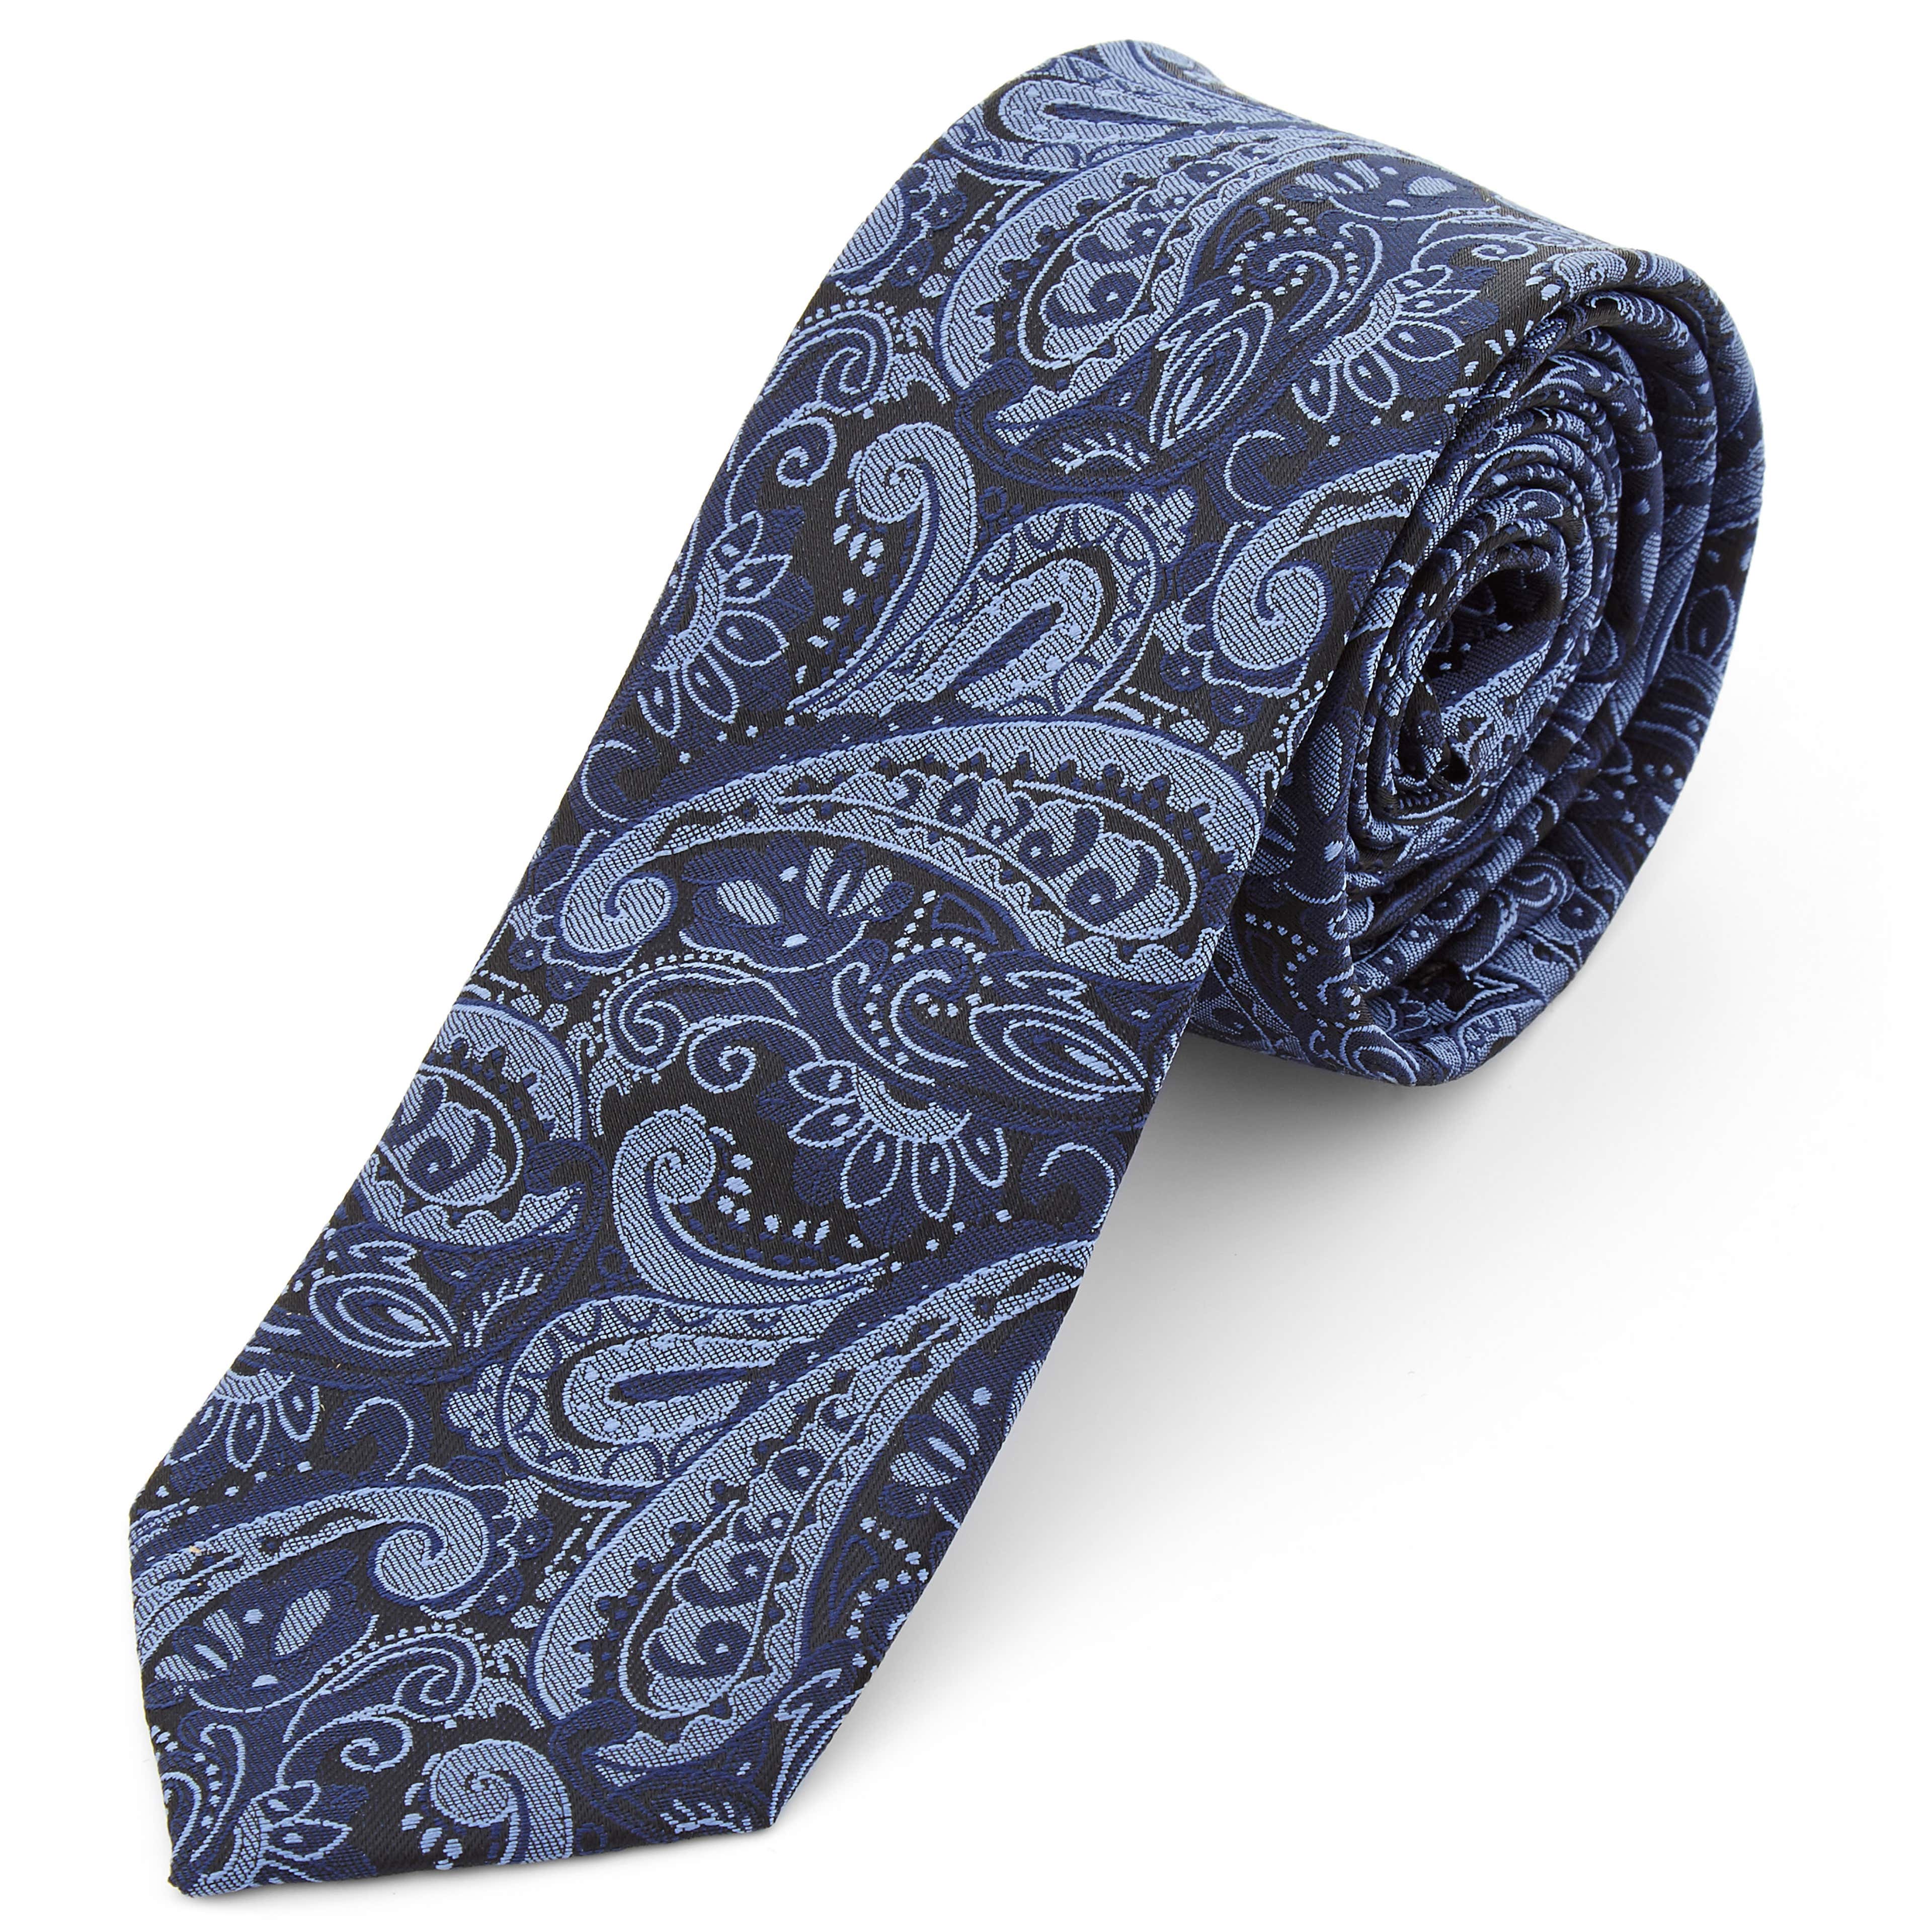 Cravată din poliester cu model Paisley bleumarin și albastru